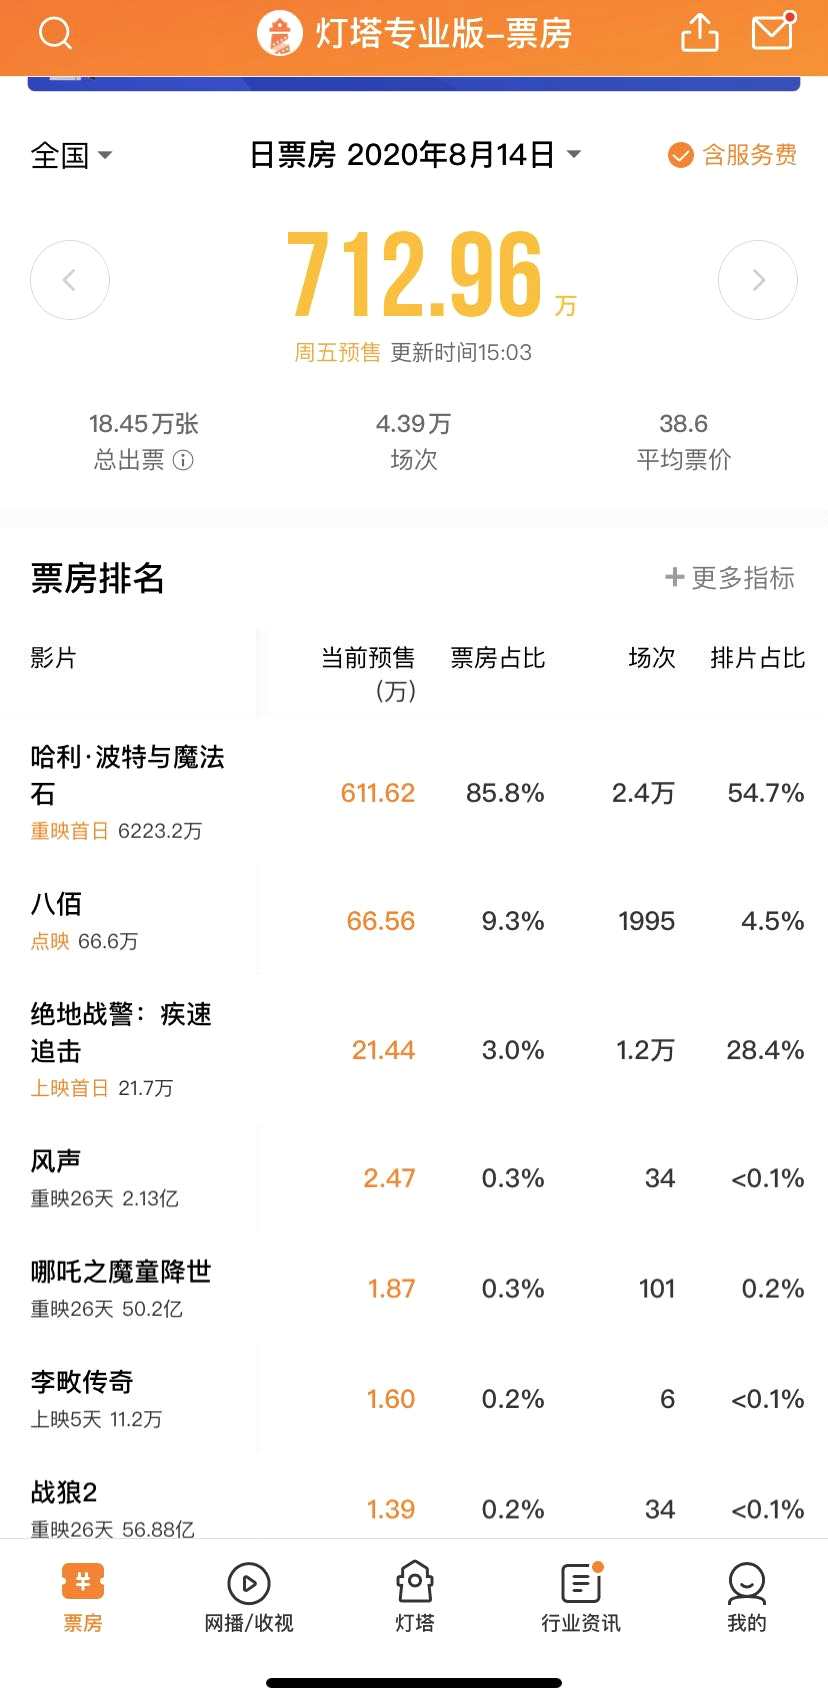 继成都之后 上海影院8月14日起上座率可放宽至50%